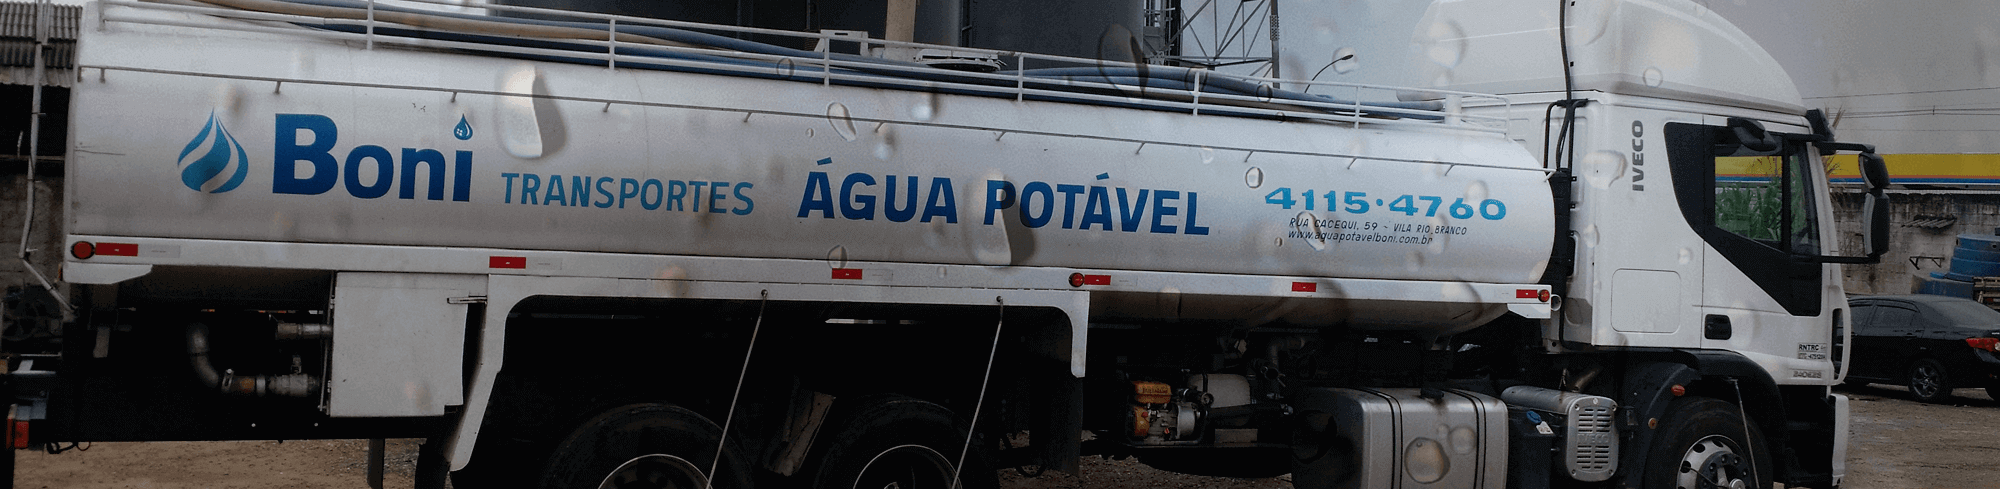 Caminhão Pipa - Água Potável Boni